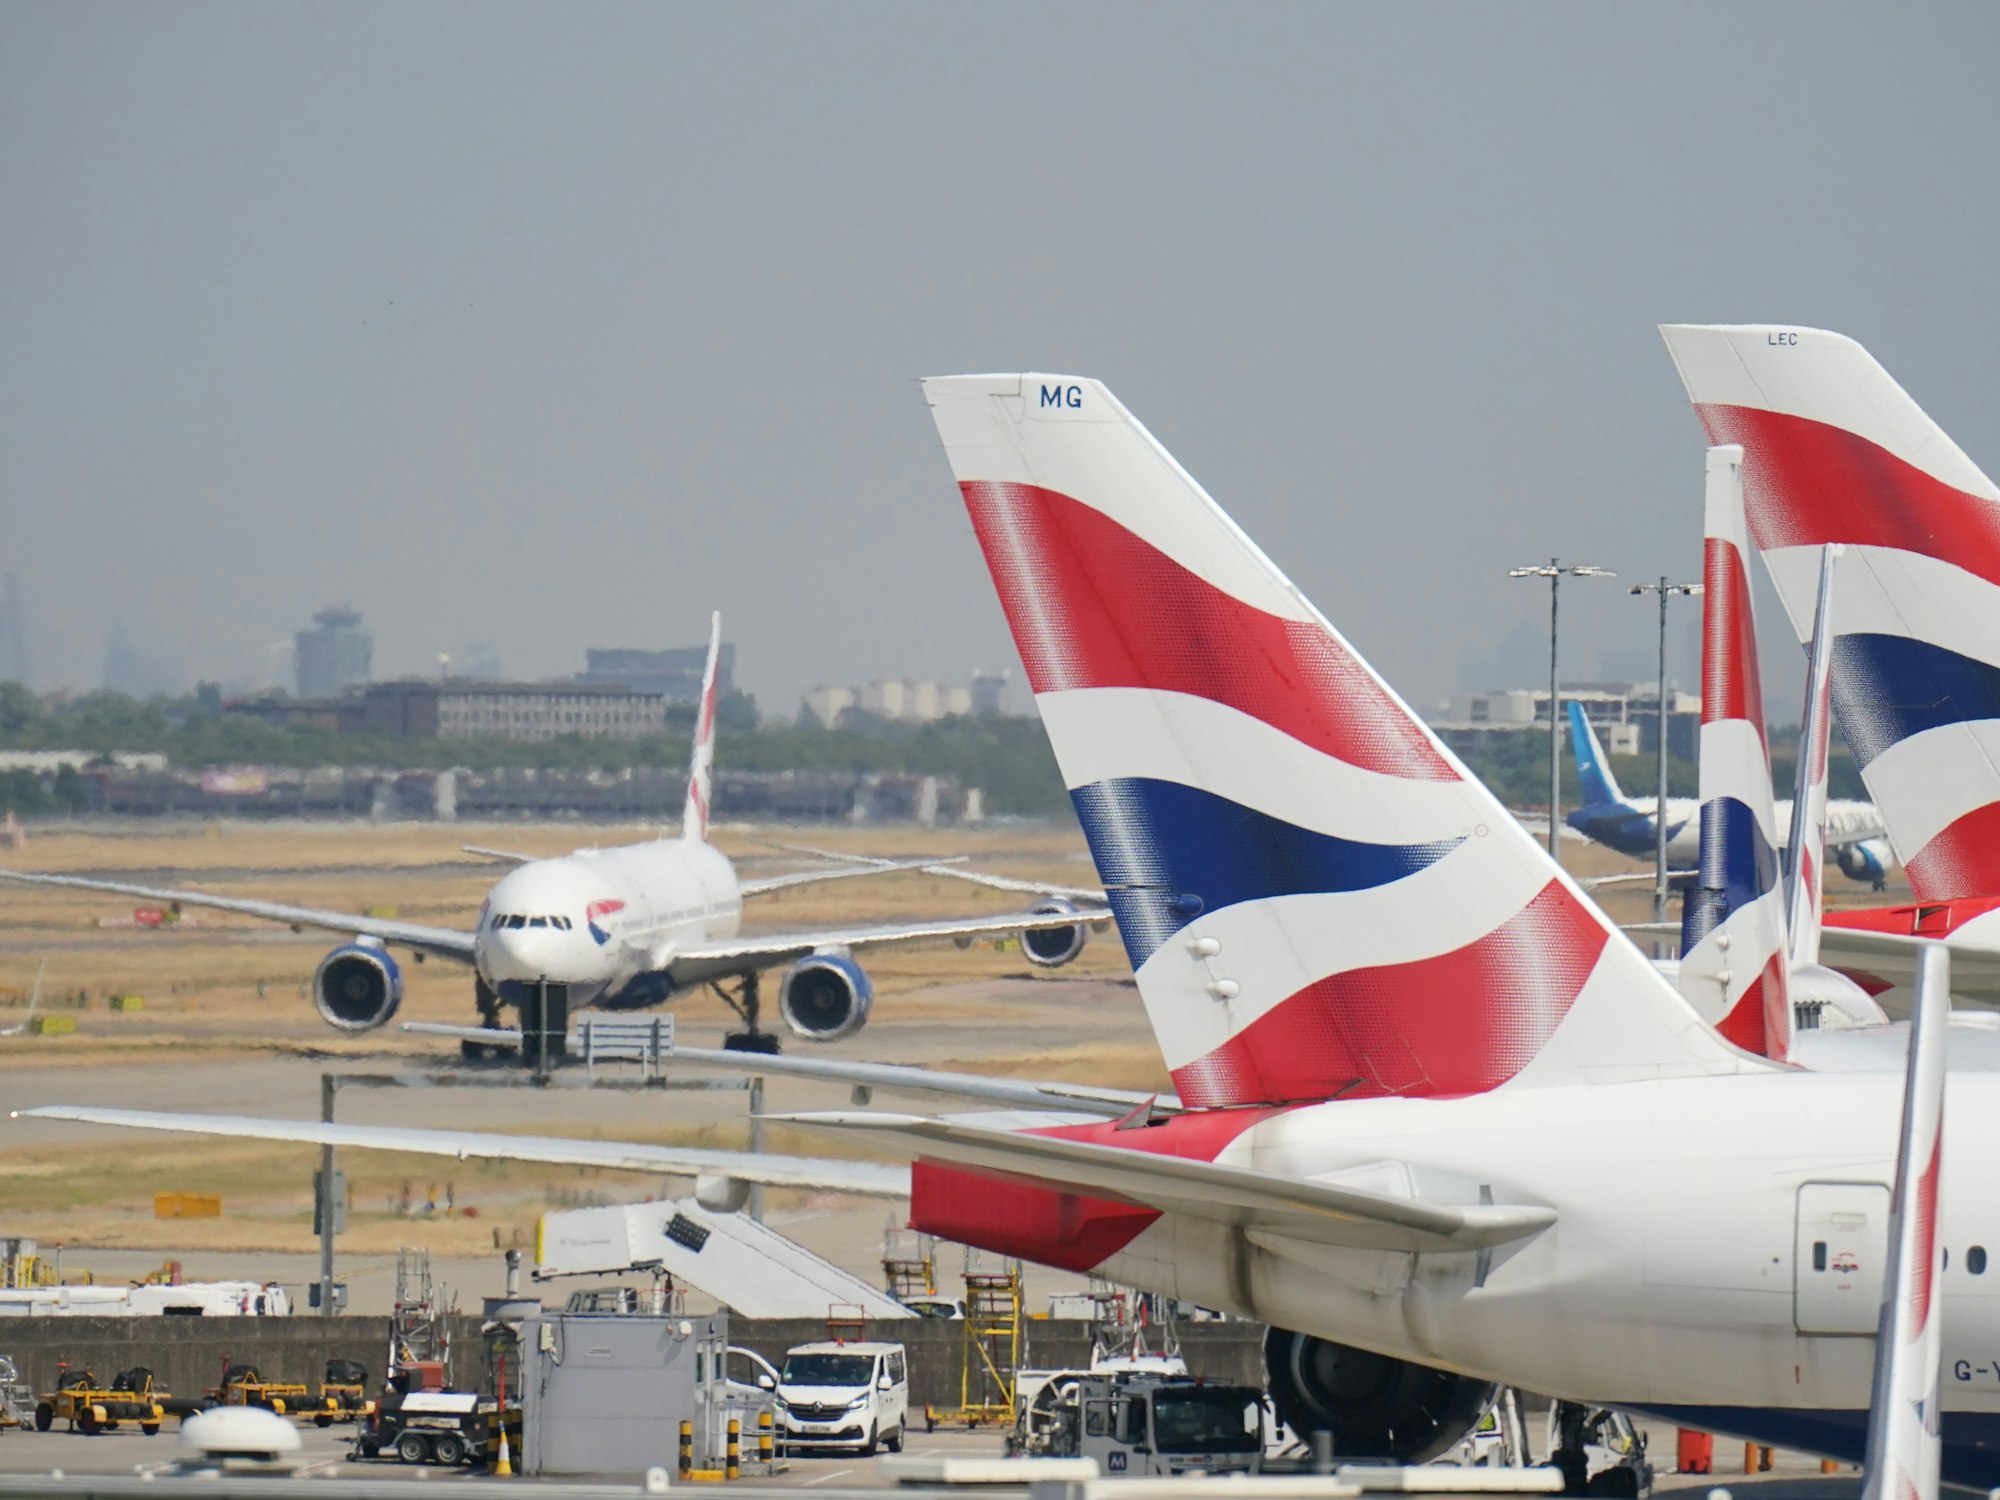 Flugzeuge von British Airways stehen auf dem Flughafen Heathrow in London.